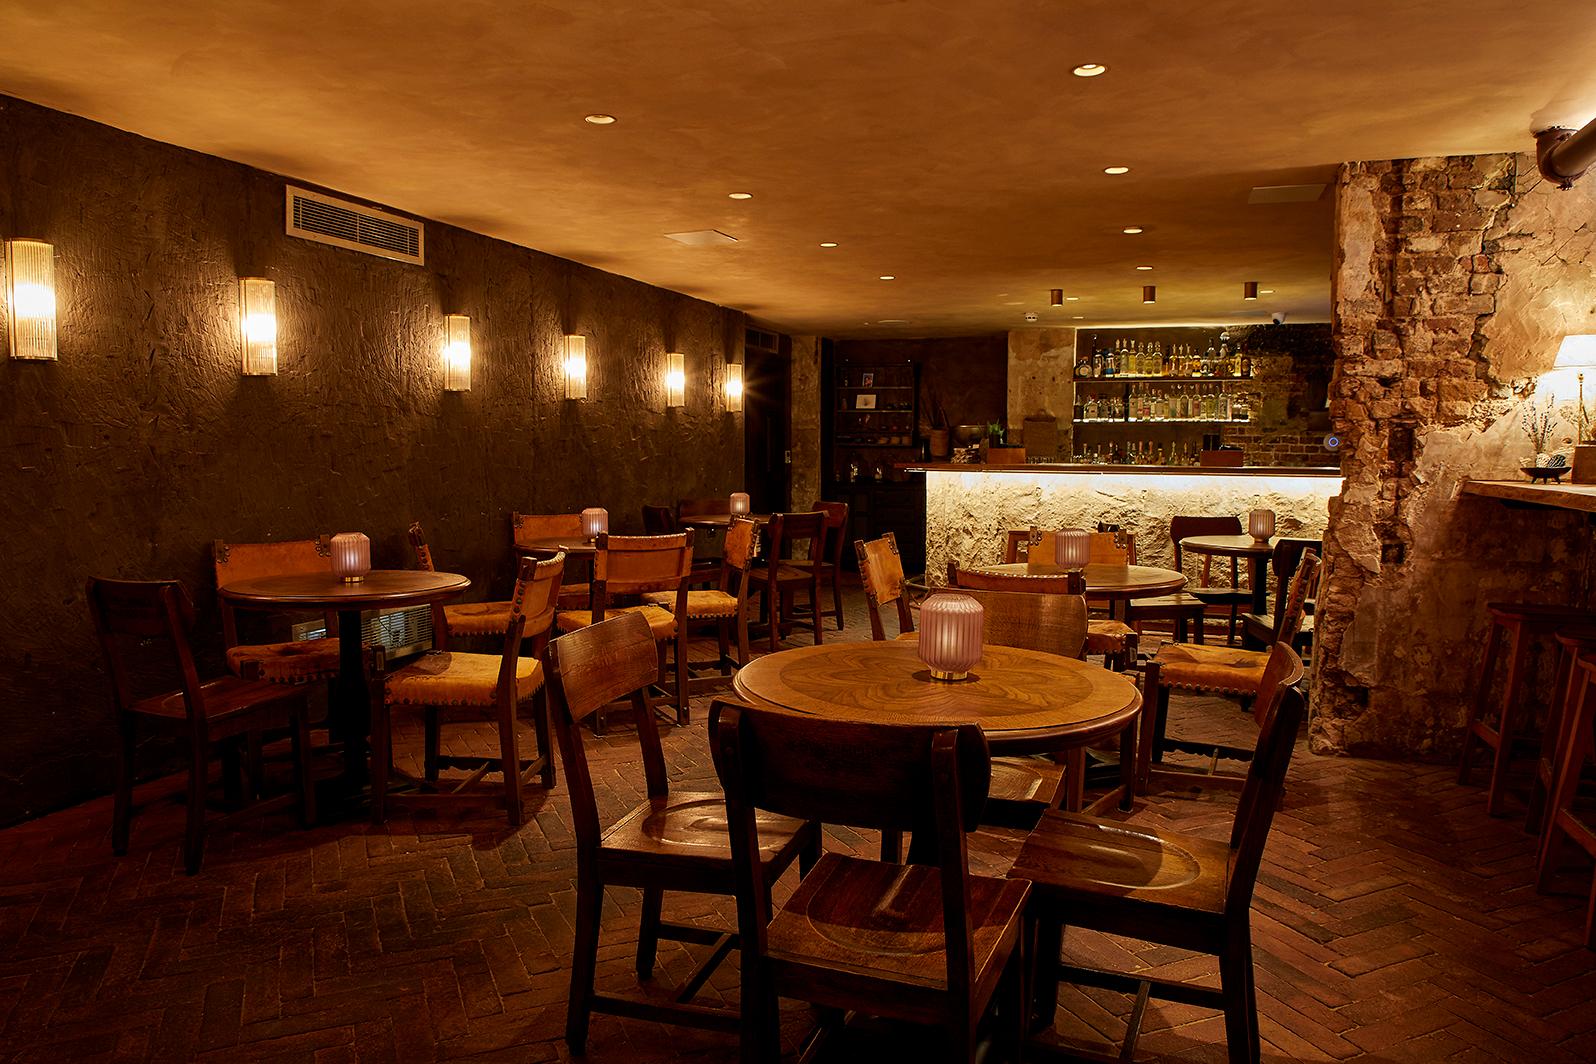 Mezcaleria - Basement Bar, Cavita Restaurant photo #1